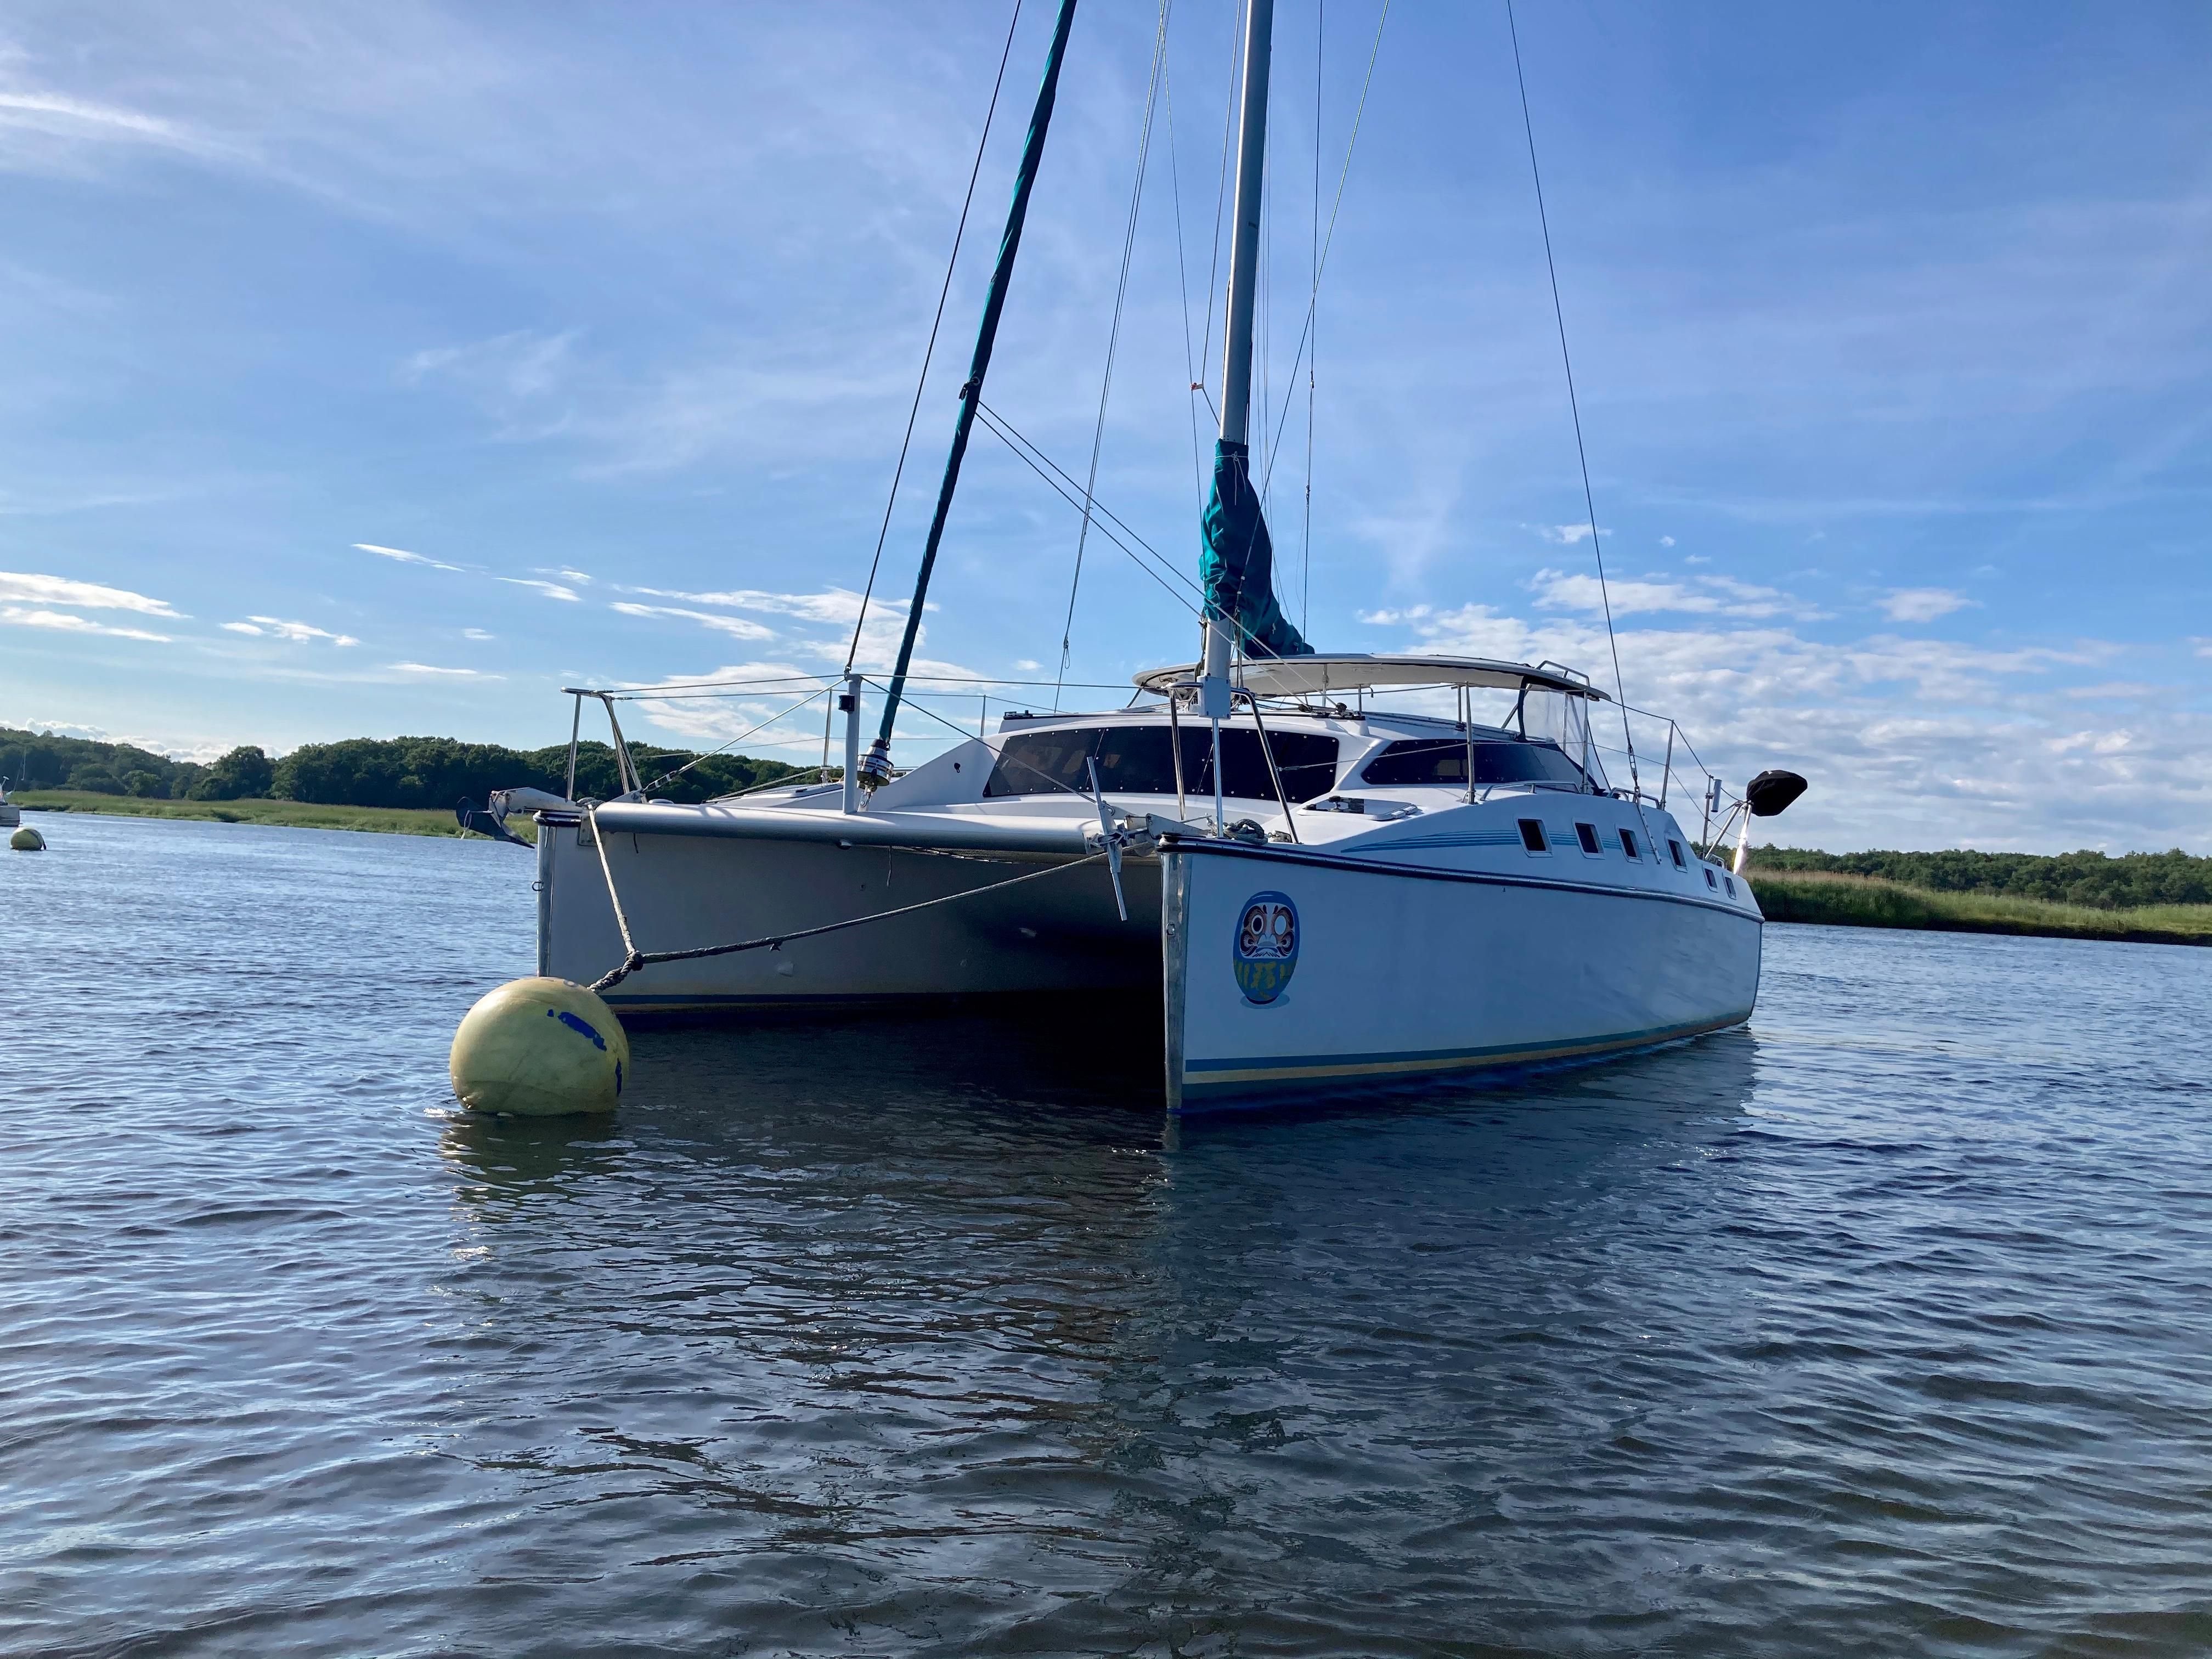 32 foot catamaran for sale